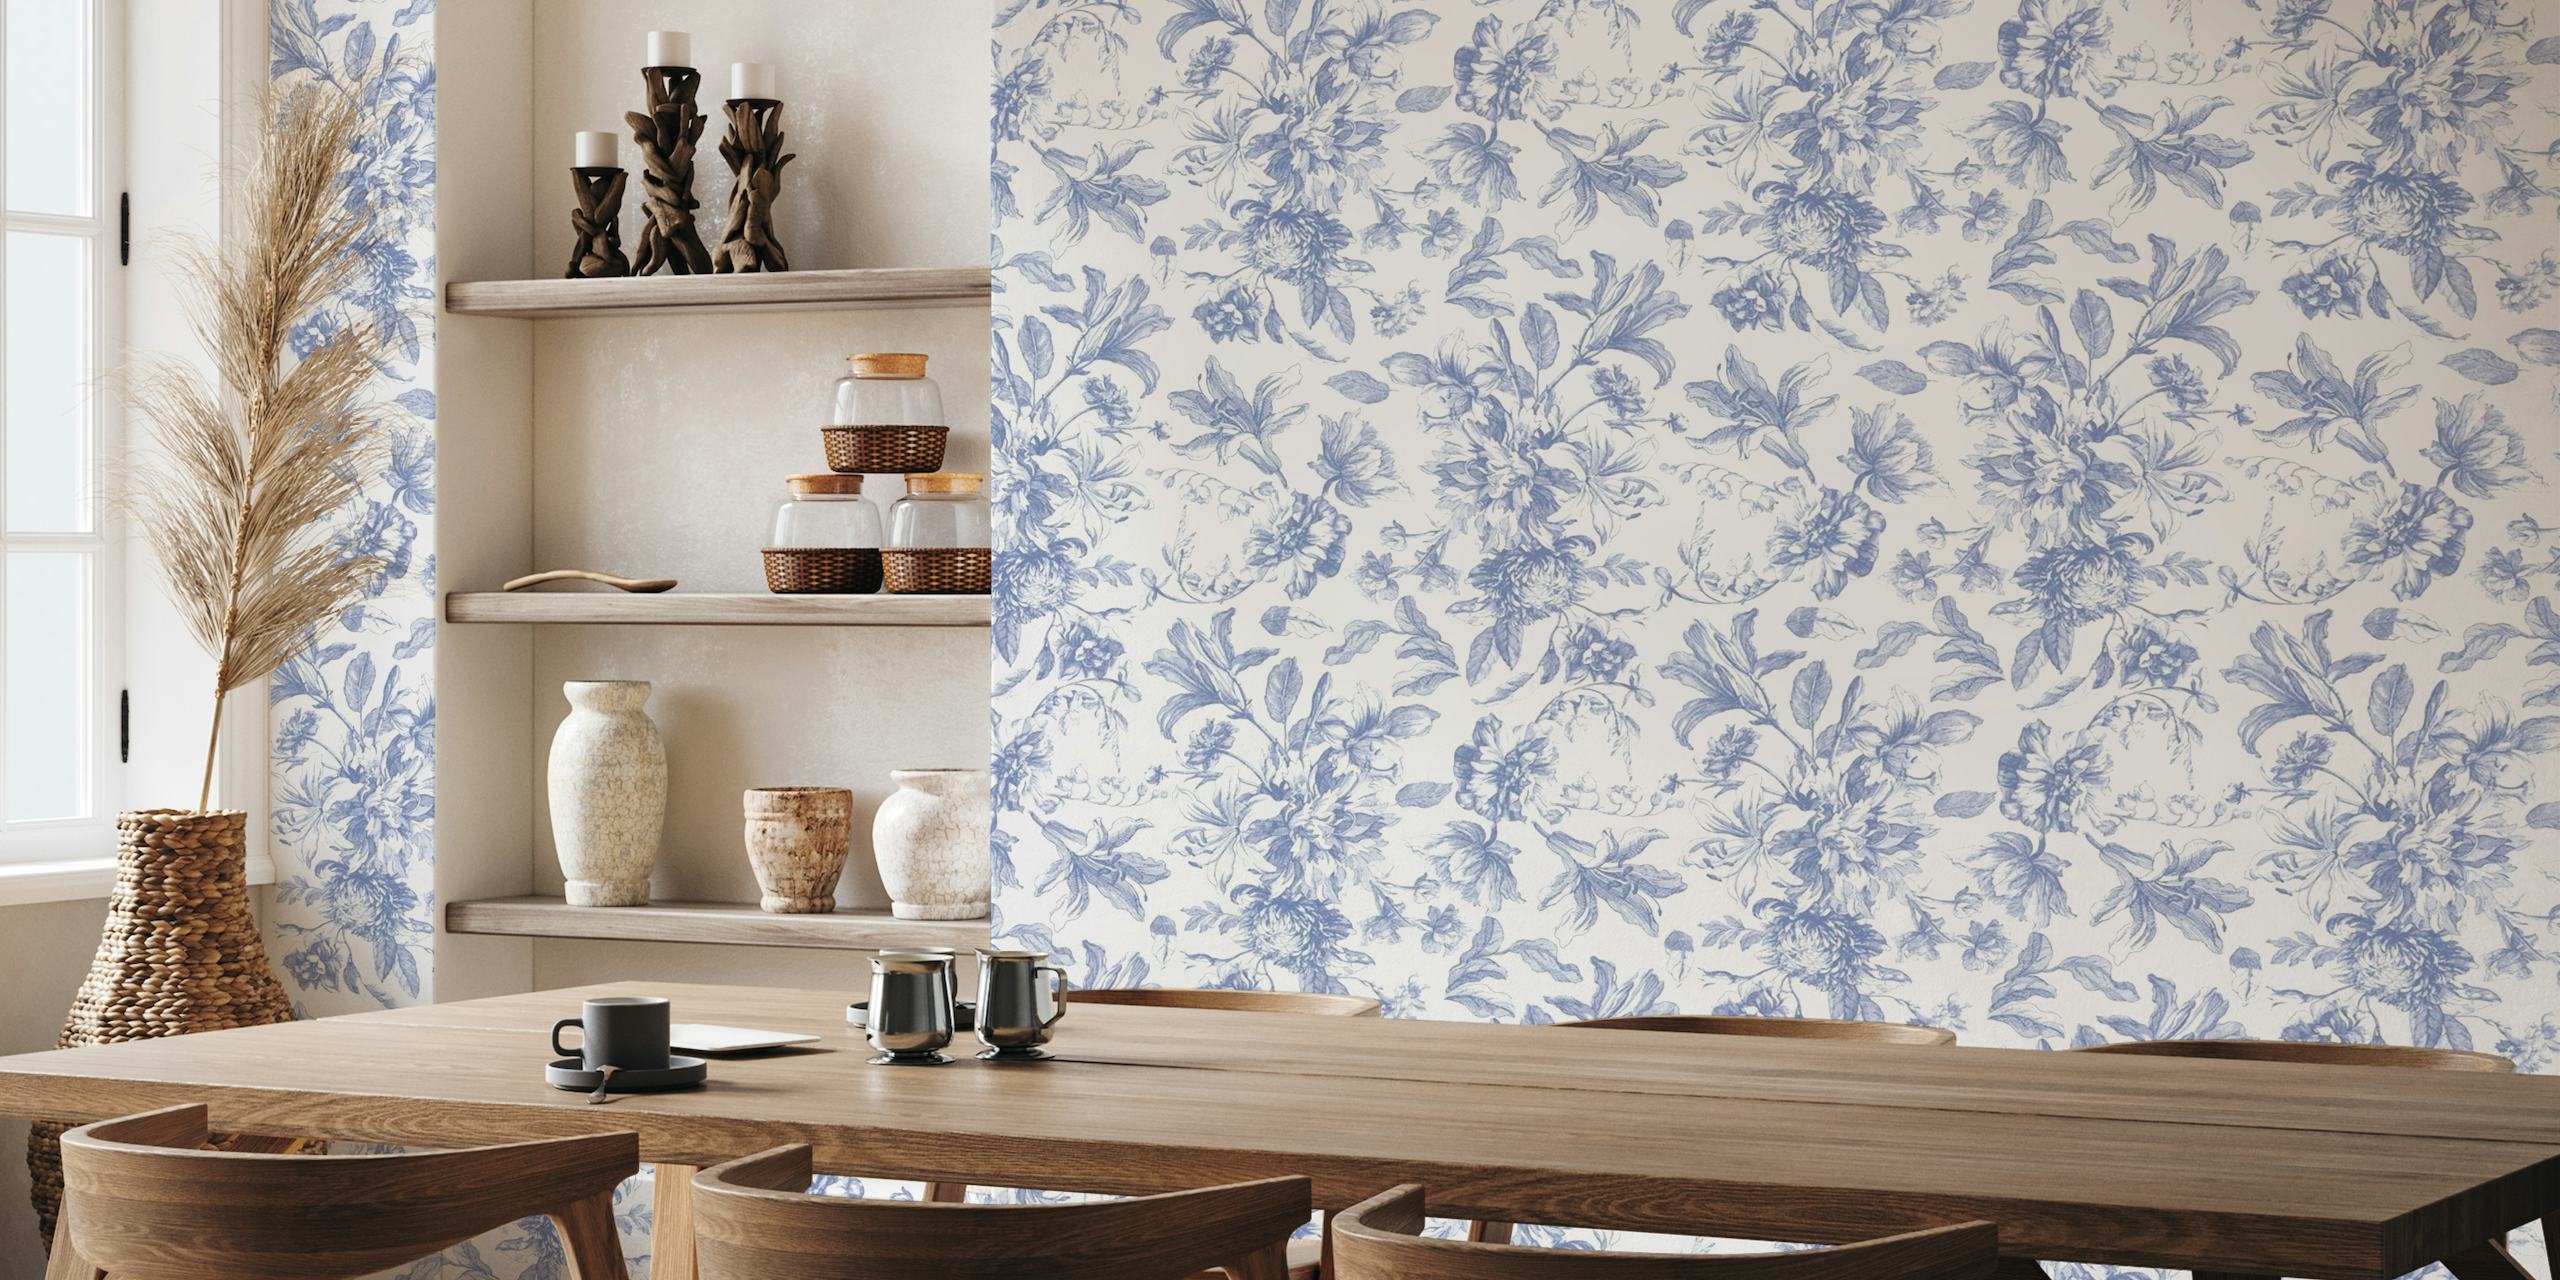 Fotomural elegante Toile de Jouy floral azul y blanco